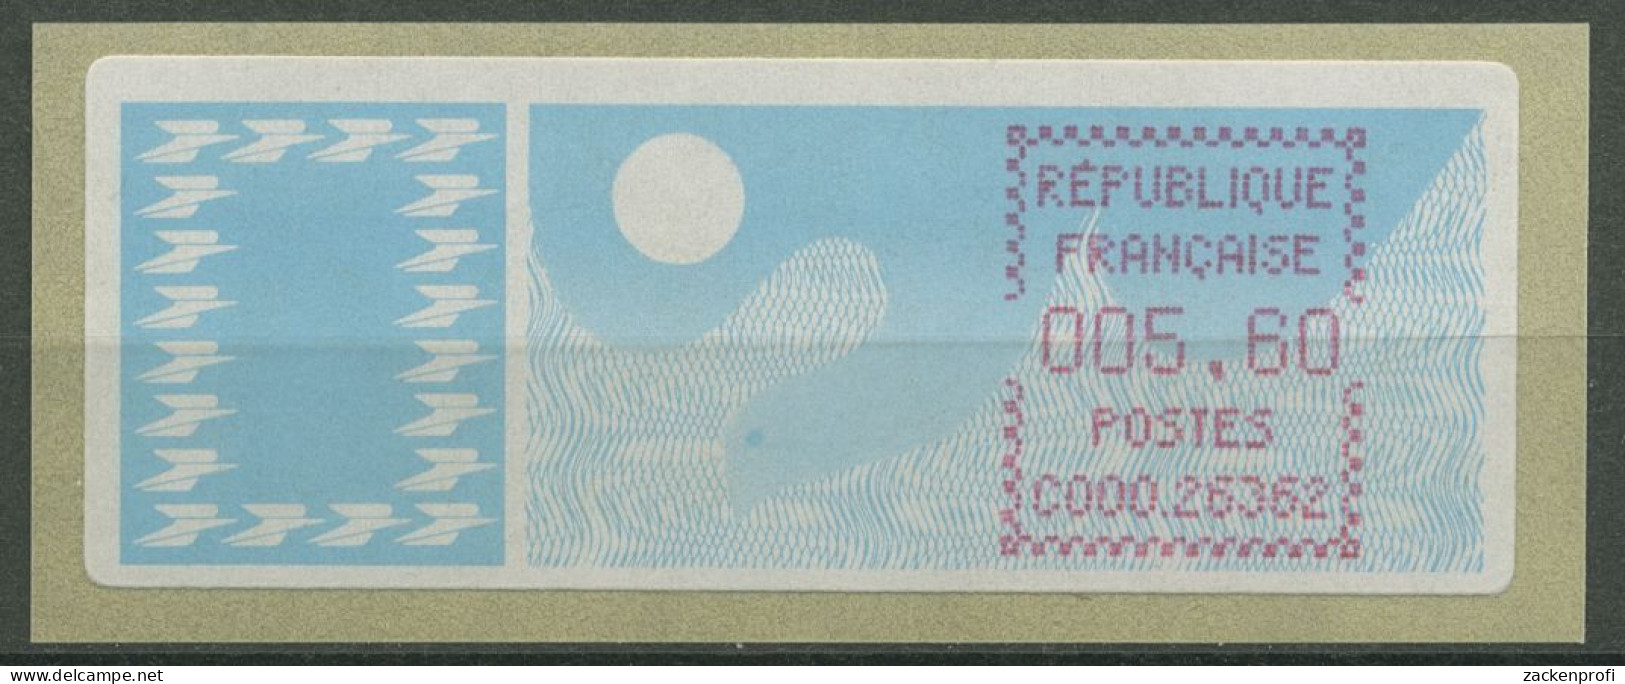 Frankreich ATM 1985 Taube Einzelwert ATM 6.1 Zd Postfrisch - 1985 « Carrier » Paper